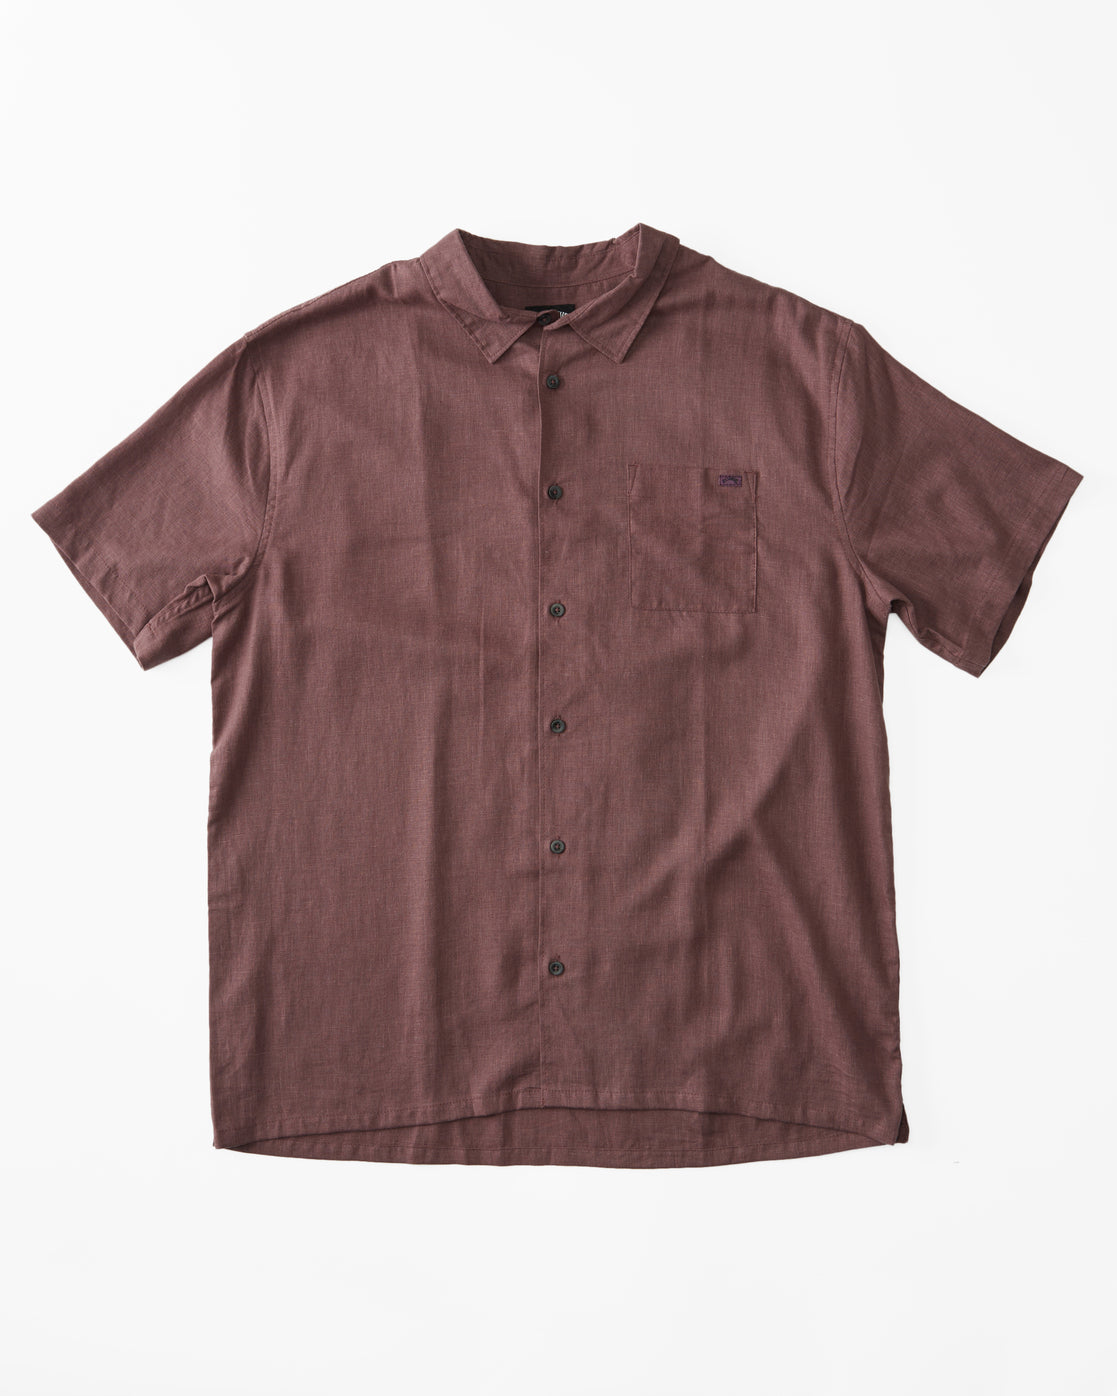 Billabong Everyday Solid Short Sleeve Shirt in vintage violet